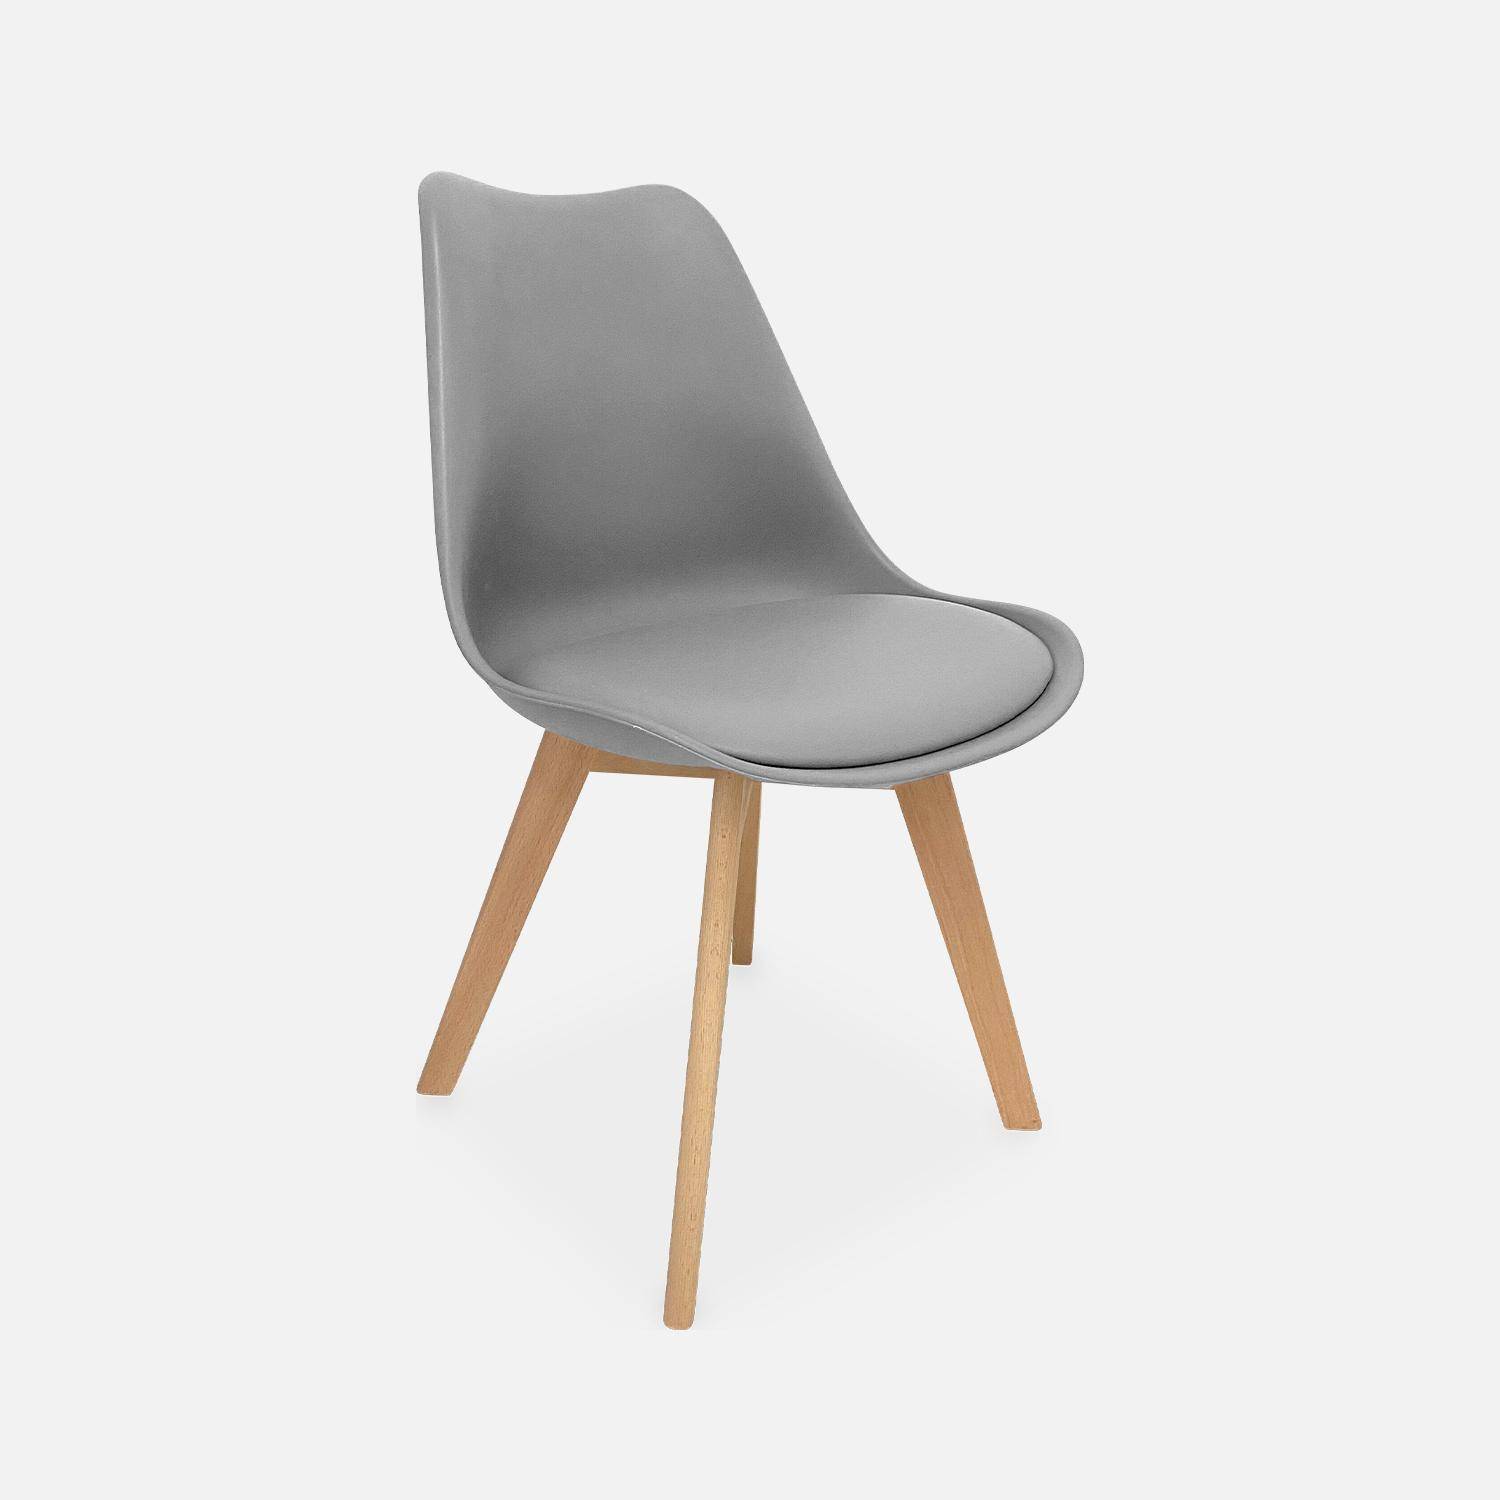 Juego de 6 sillas escandinavas, patas de madera de haya, monoplaza, gris Photo4